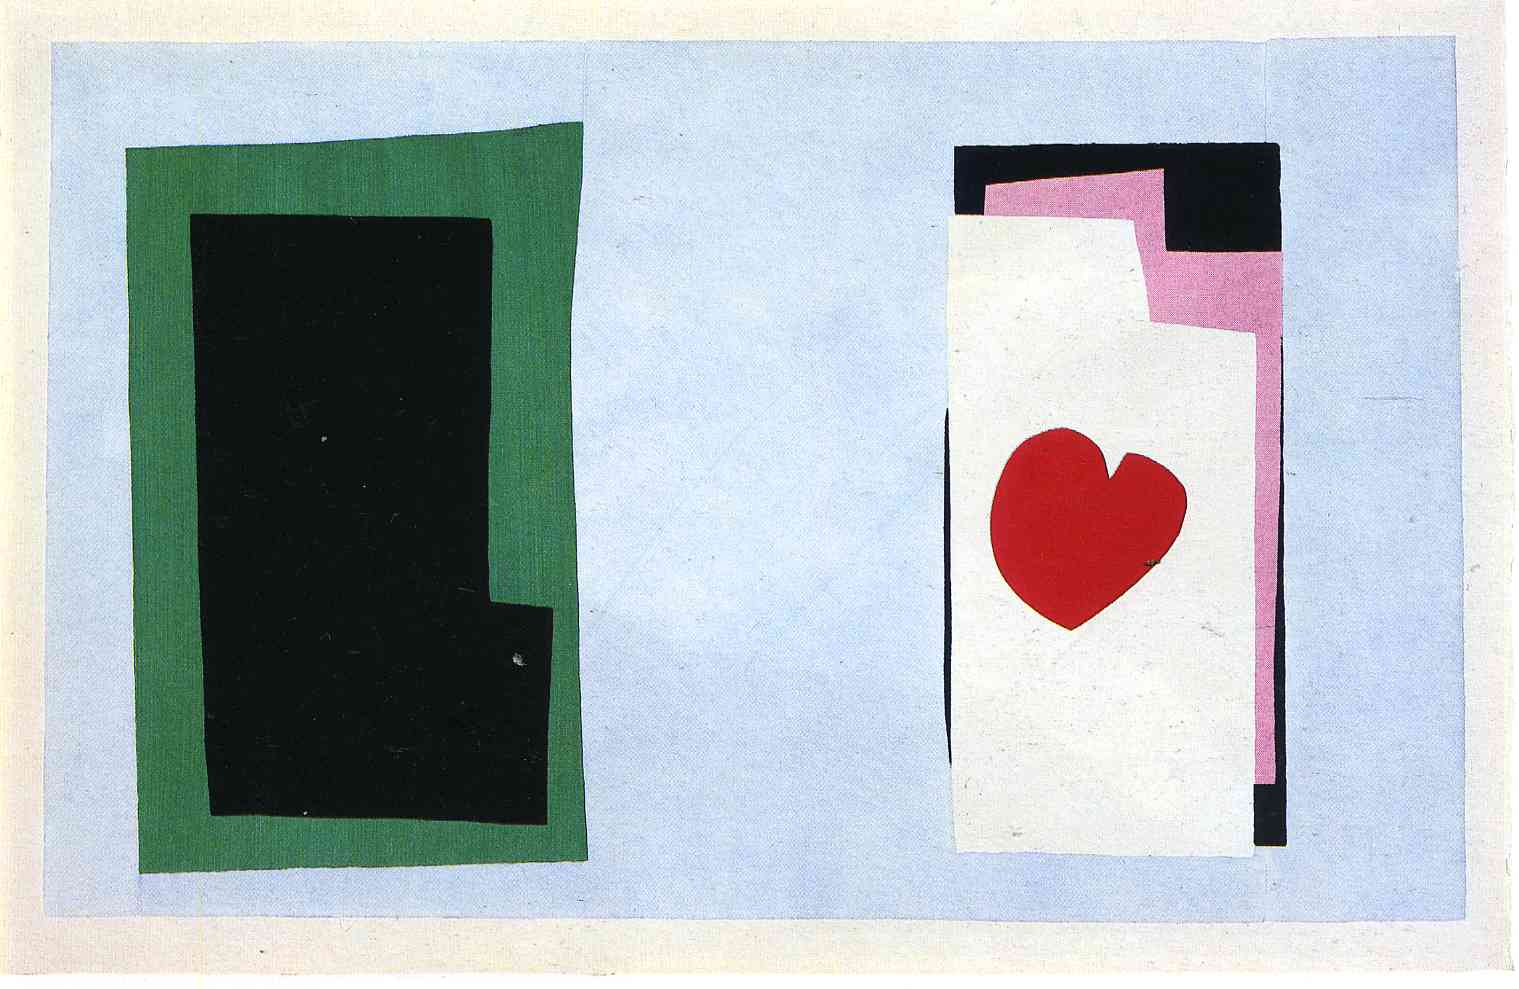 Henri Matisse - The Heart 1943